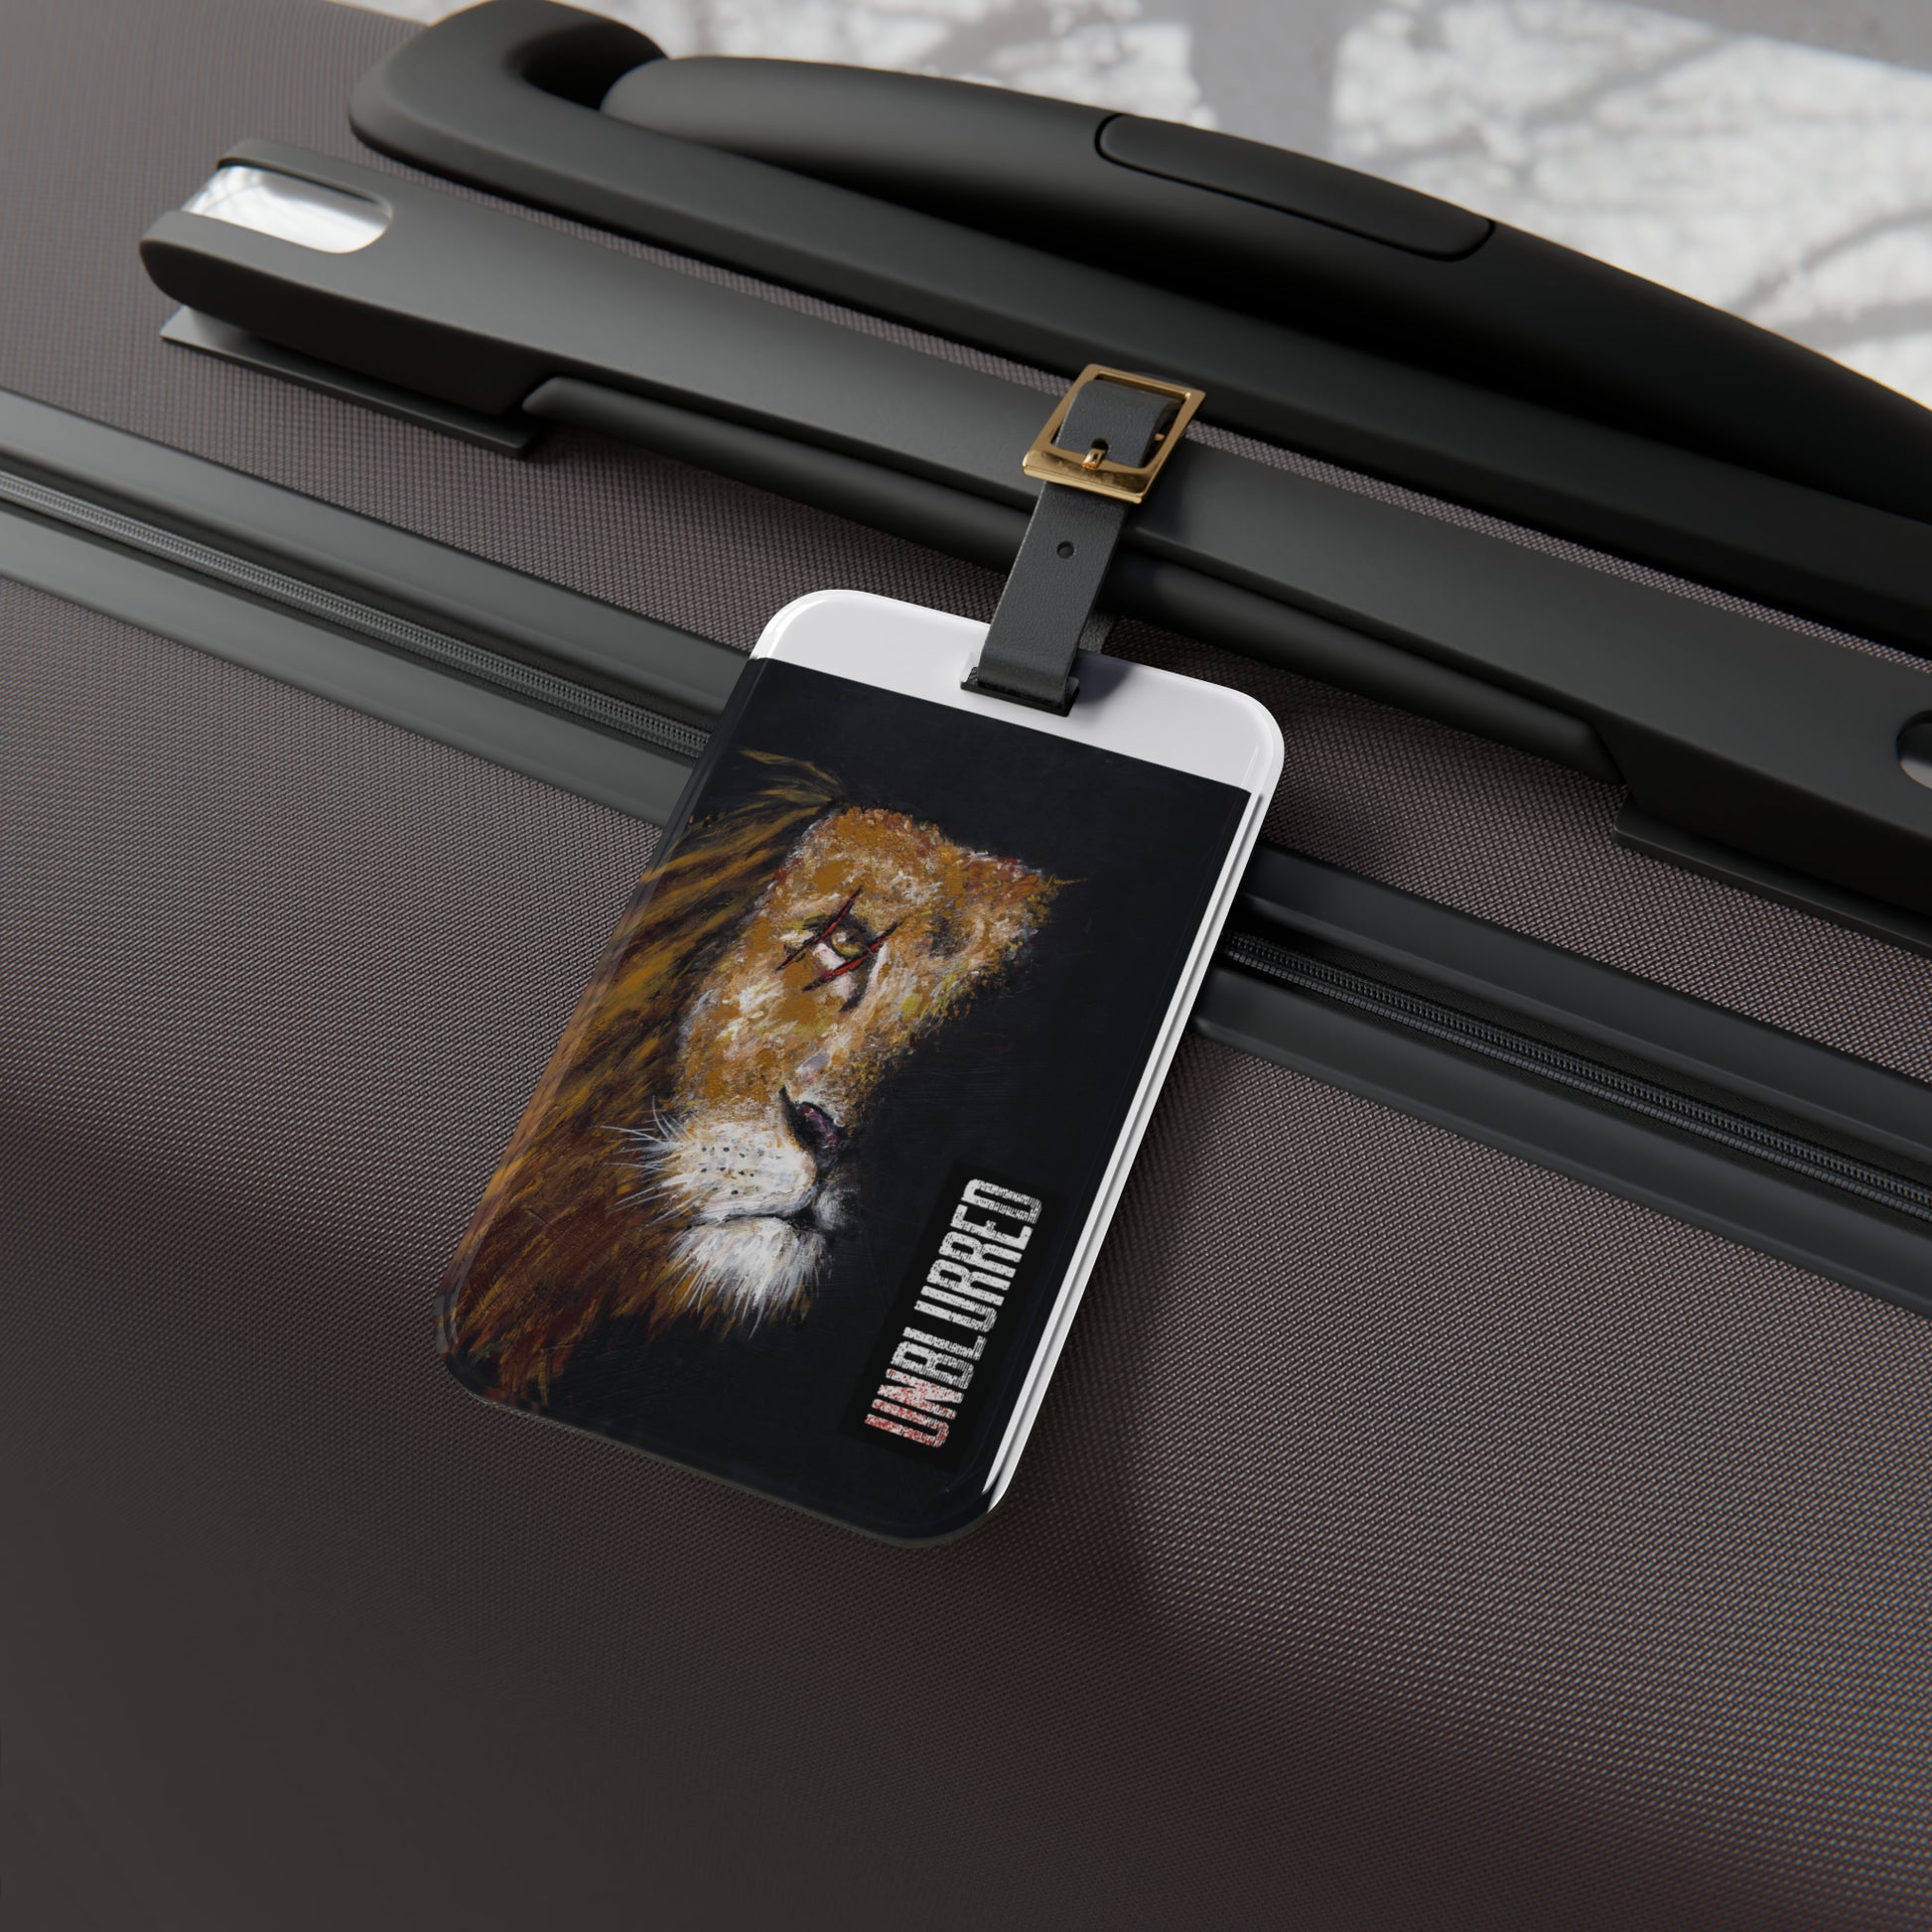 Unblurred Warrior Lion Luggage Tag